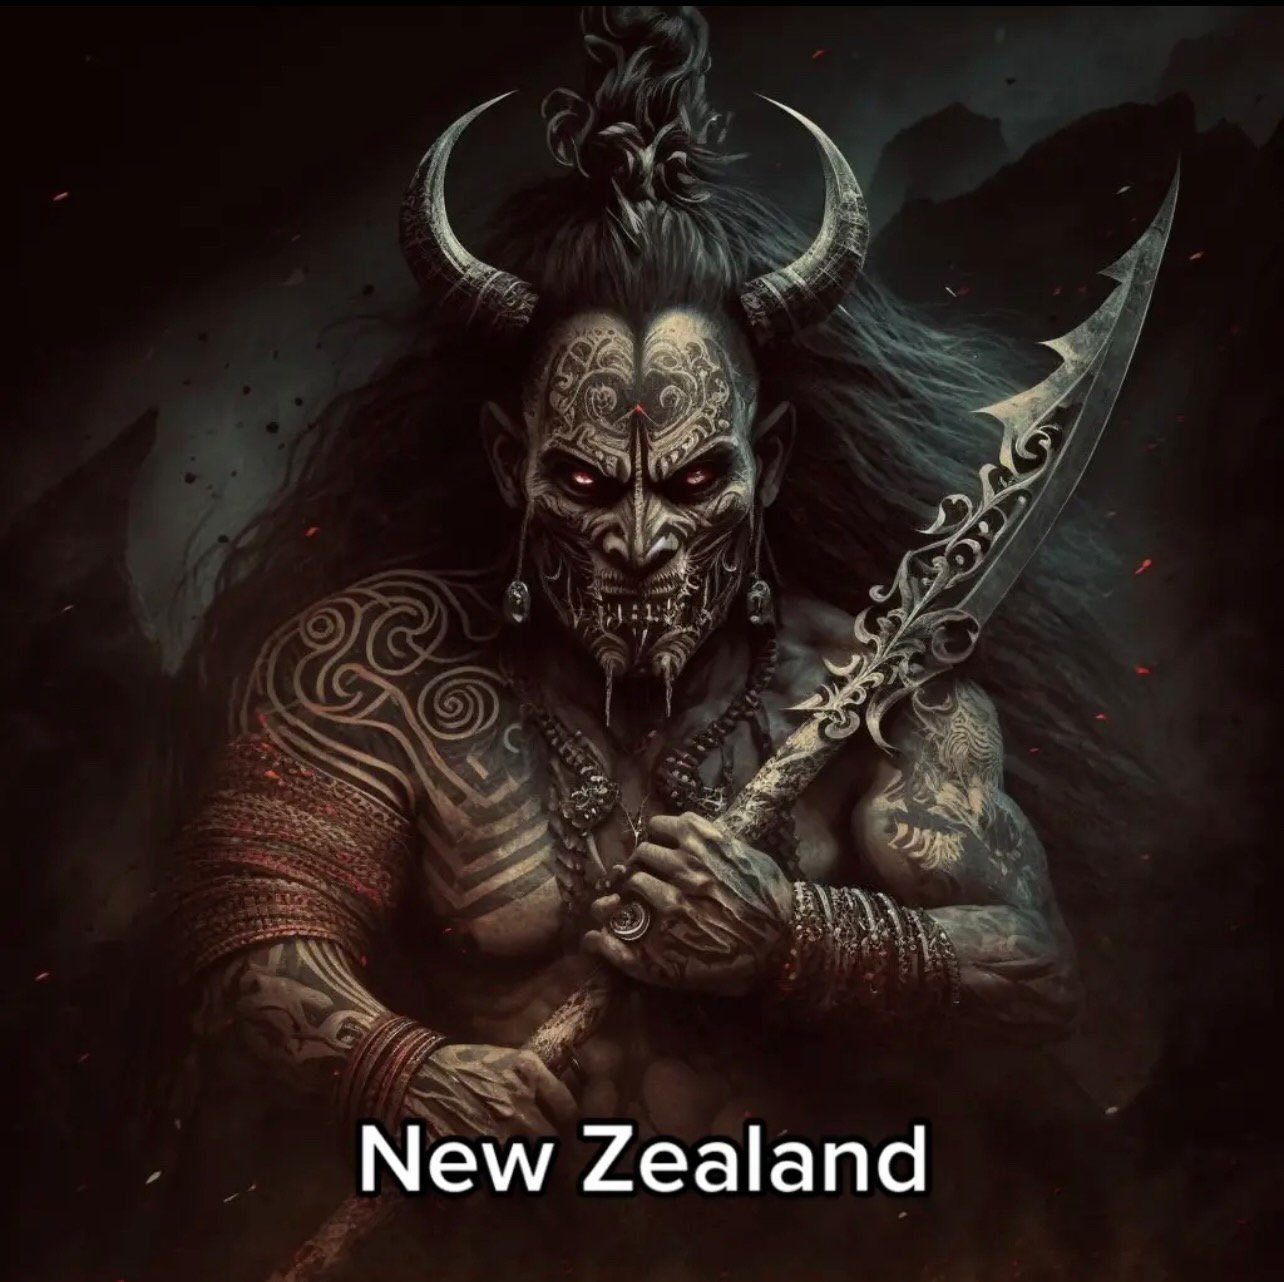 A Nova Zelândia têm um guerreiro maori com chifres como vilão.